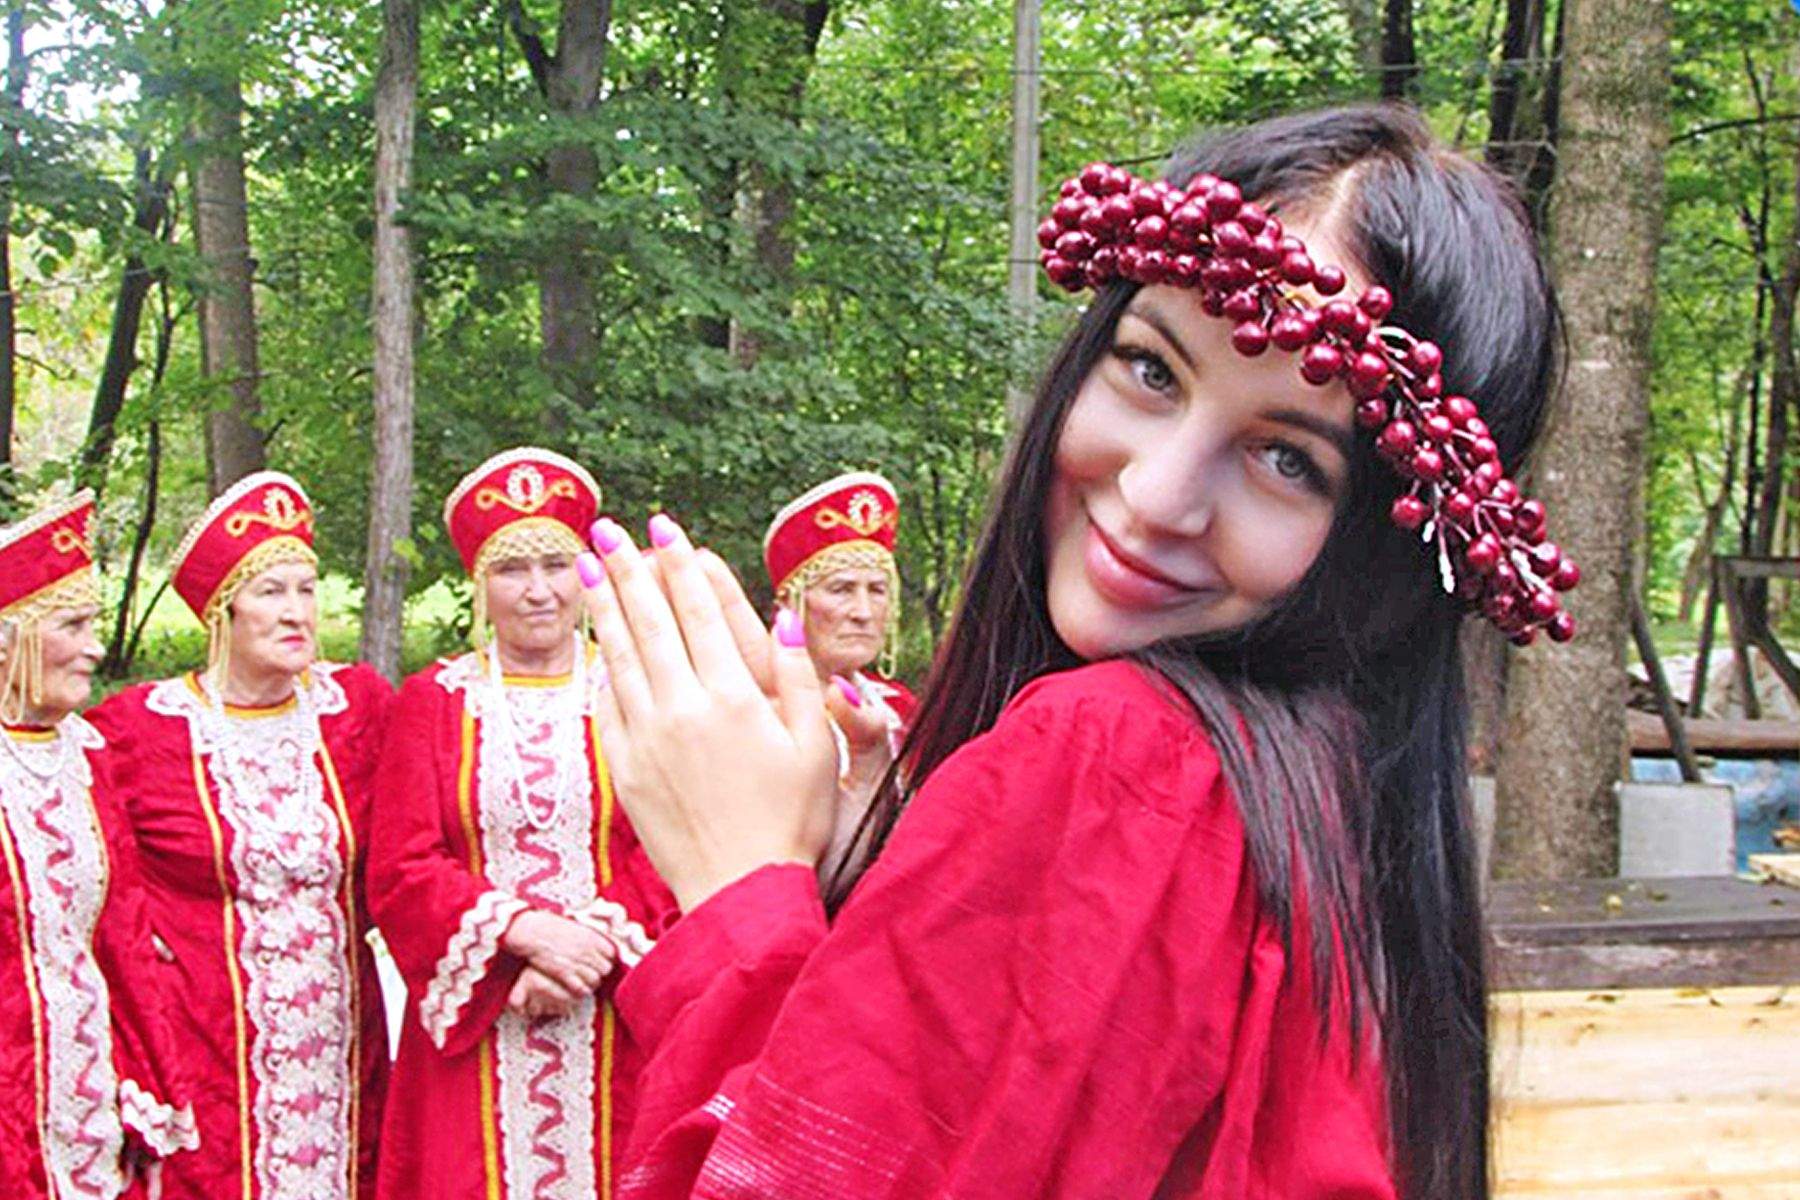 Фестиваль борща в Новонежино стал частью программы продвижения имиджа территорий, реализуемой преподавателями и студентами ВГУЭС